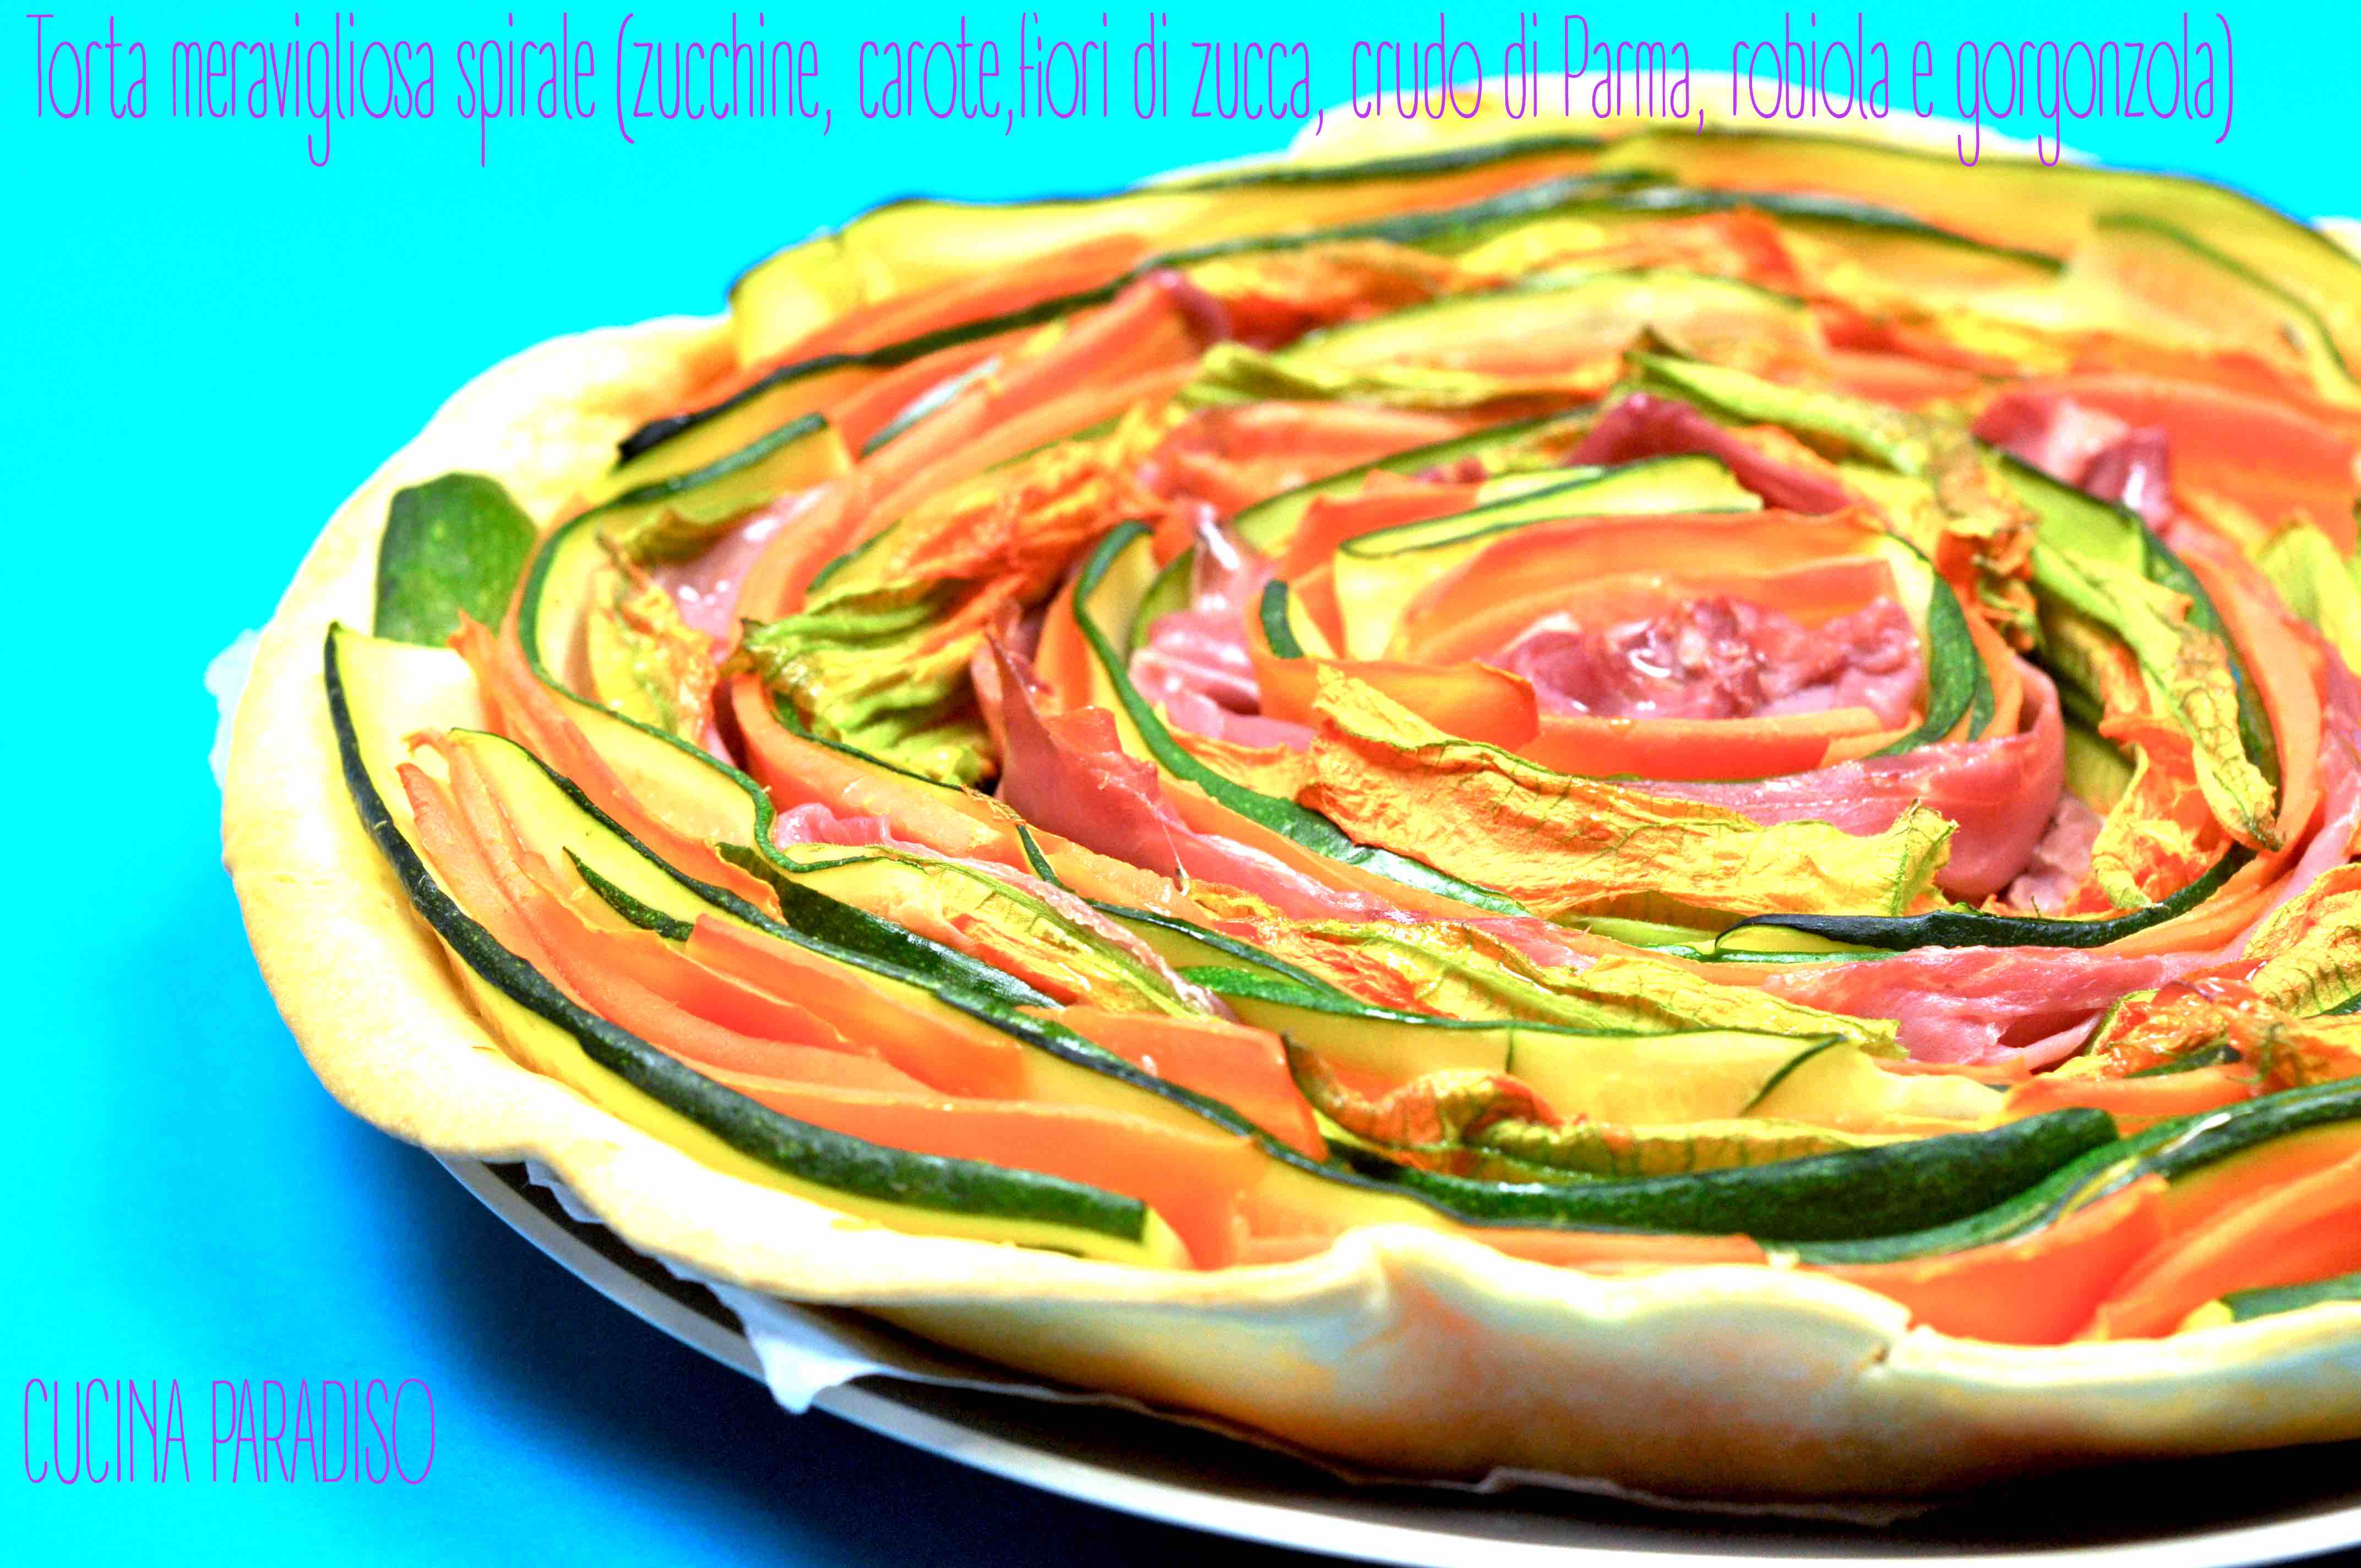 Torta meravigliosa spirale (zucchine, carote,fiori di zucca, crudo di Parma, robiola e gorgonzola) 2